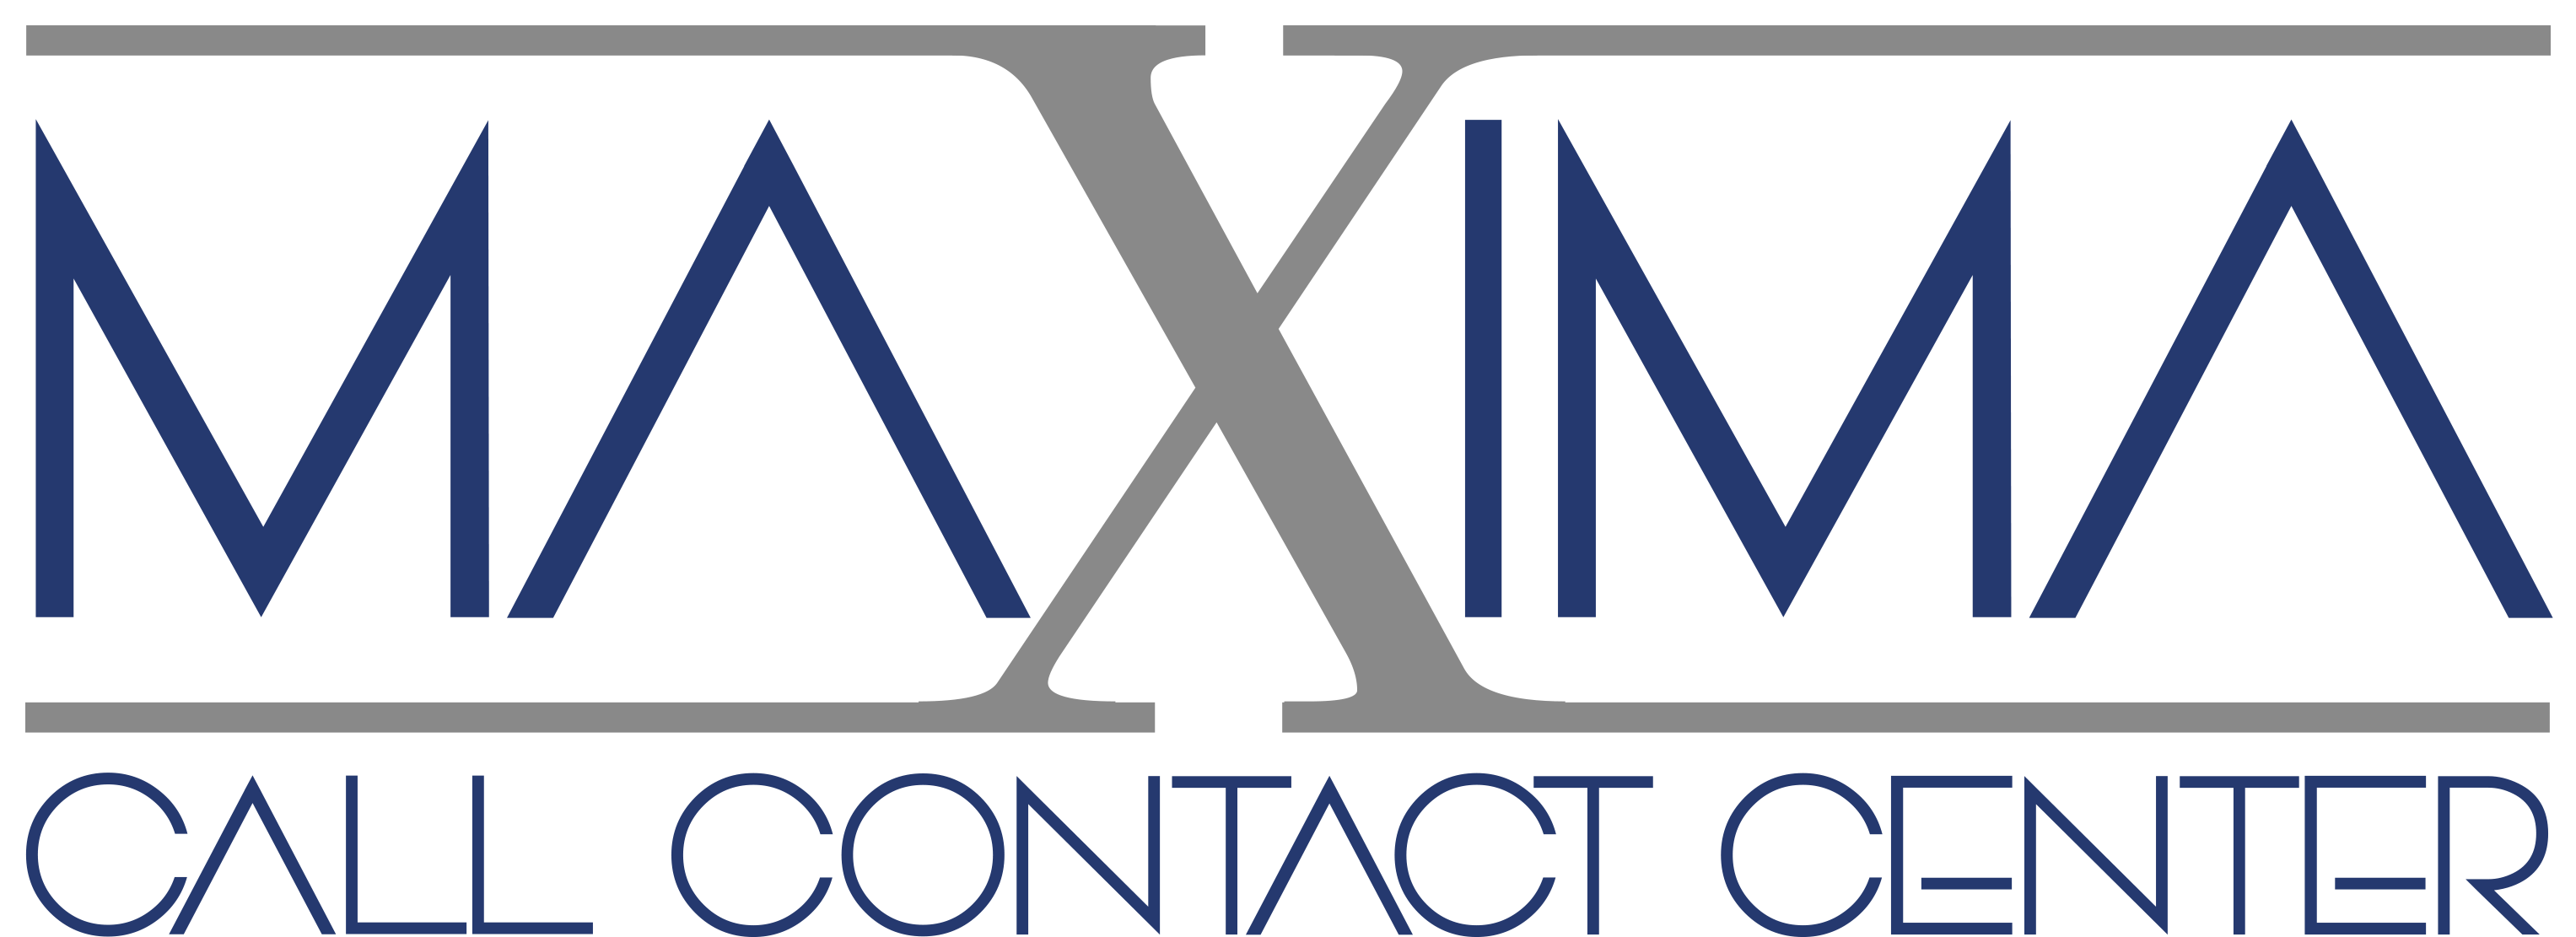 Maxima Call Contact Center Rignano Flaminio - Sito ufficiale